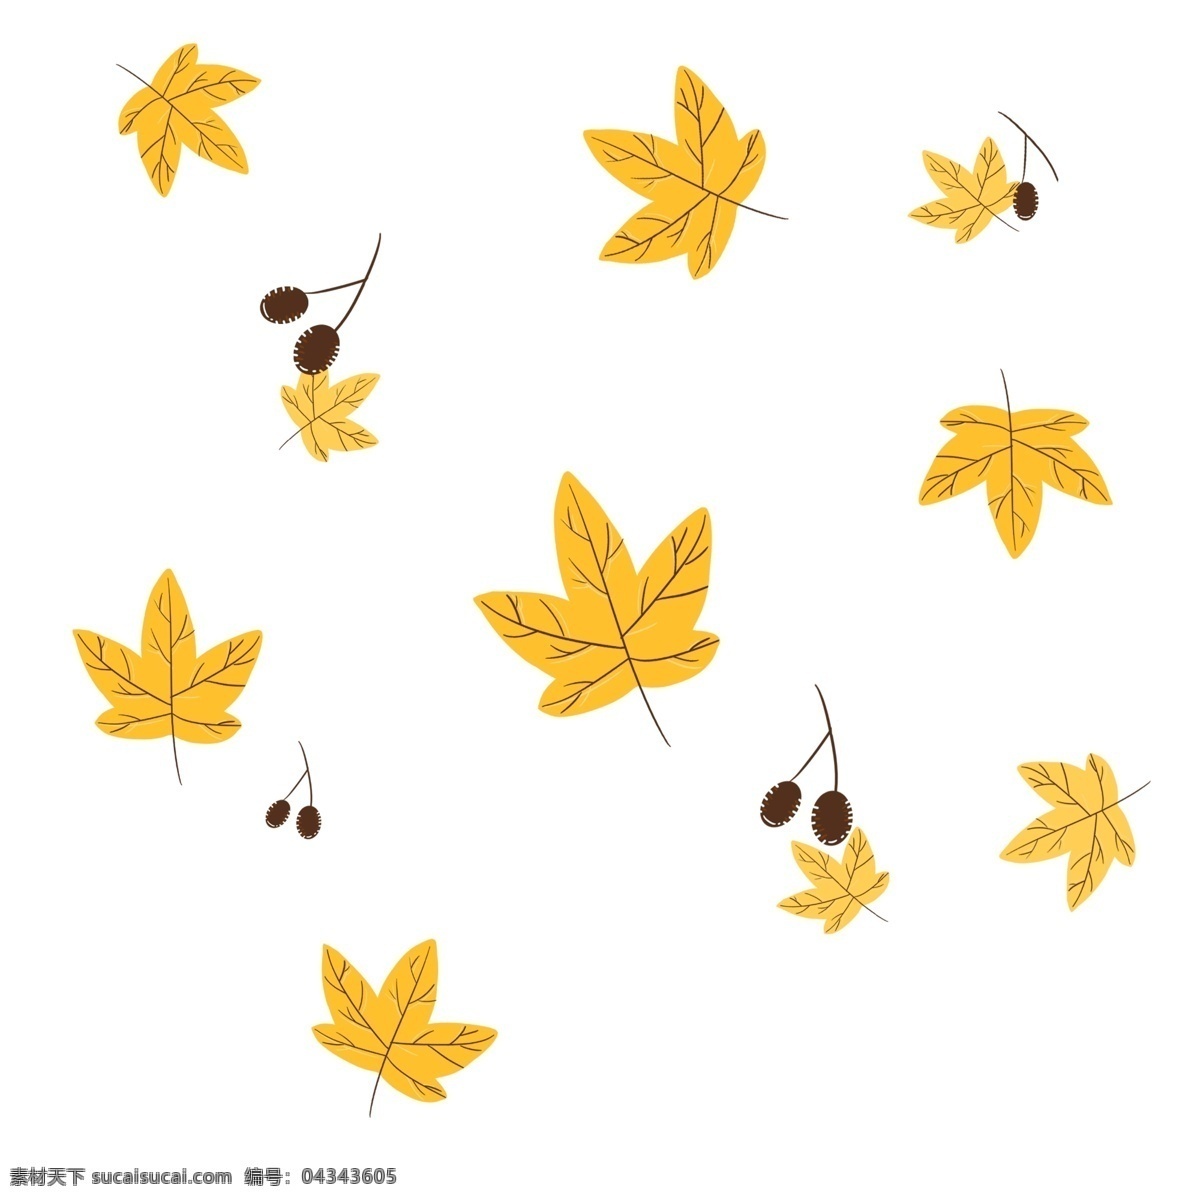 黄色 树叶 装饰 插画 黄色的树叶 漂亮的树叶 植物树叶 精美树叶 立体树叶 卡通树叶 漂浮的树叶